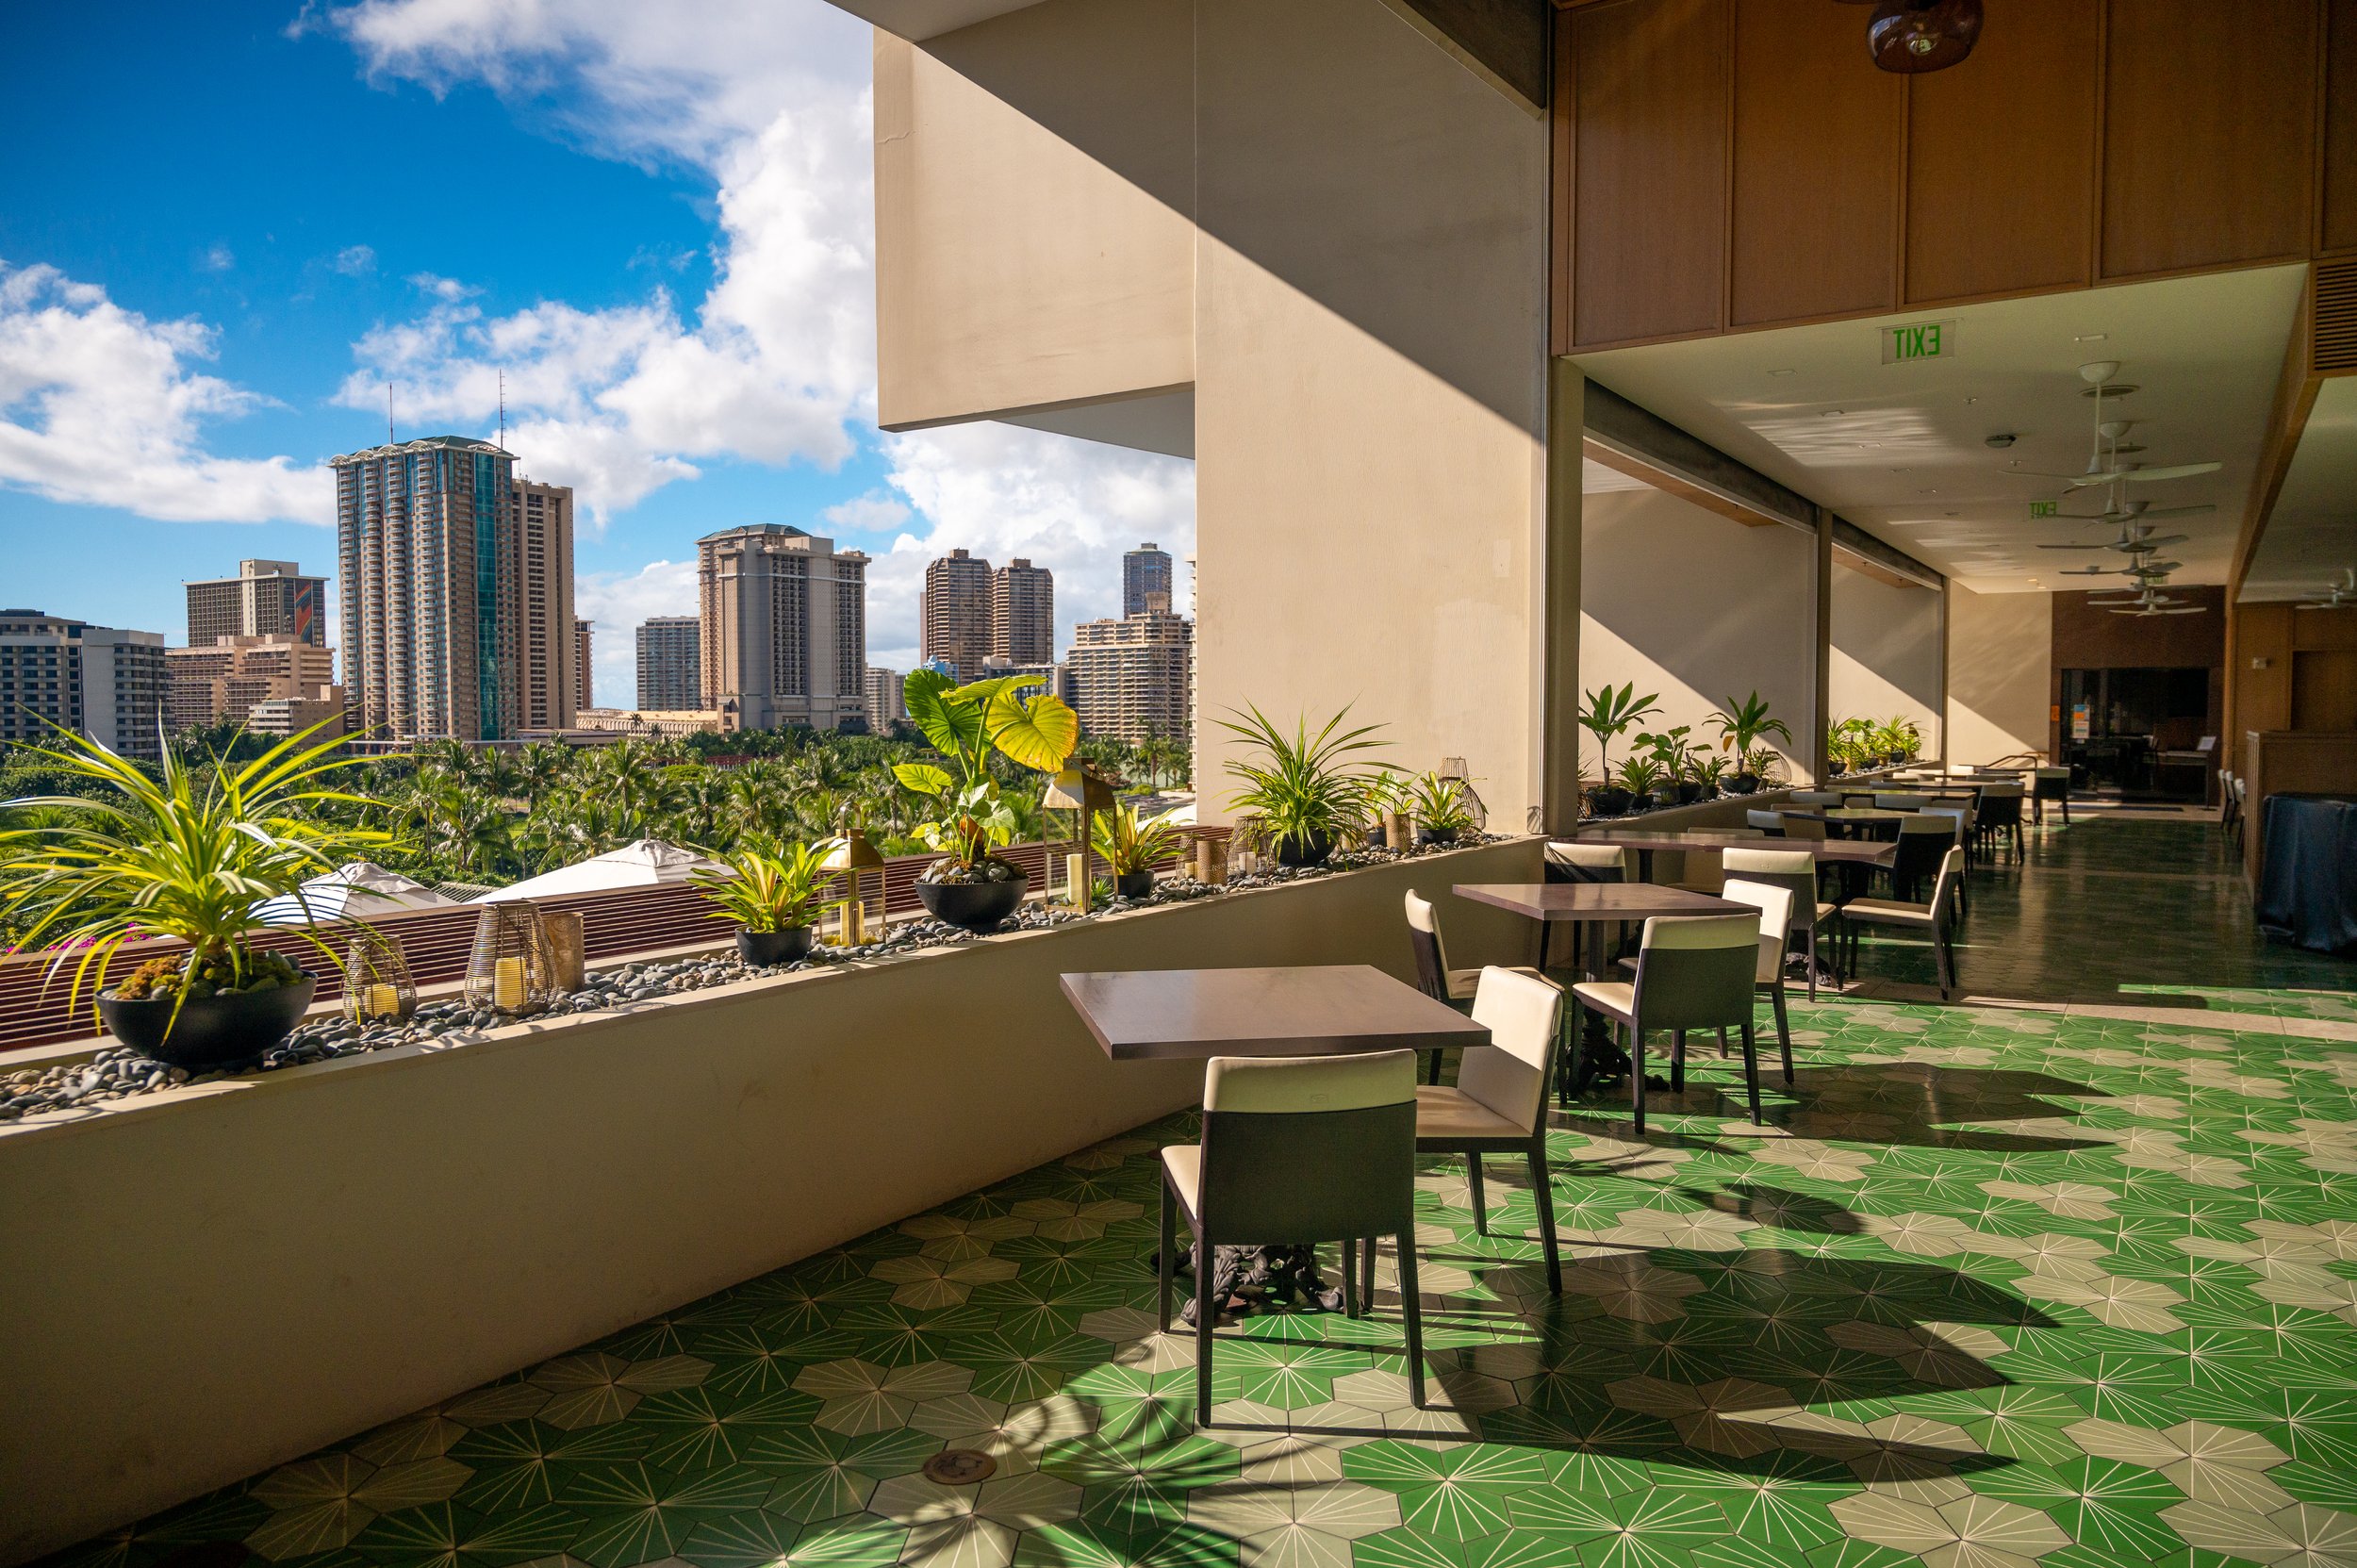 The Ritz-Carlton Waikiki